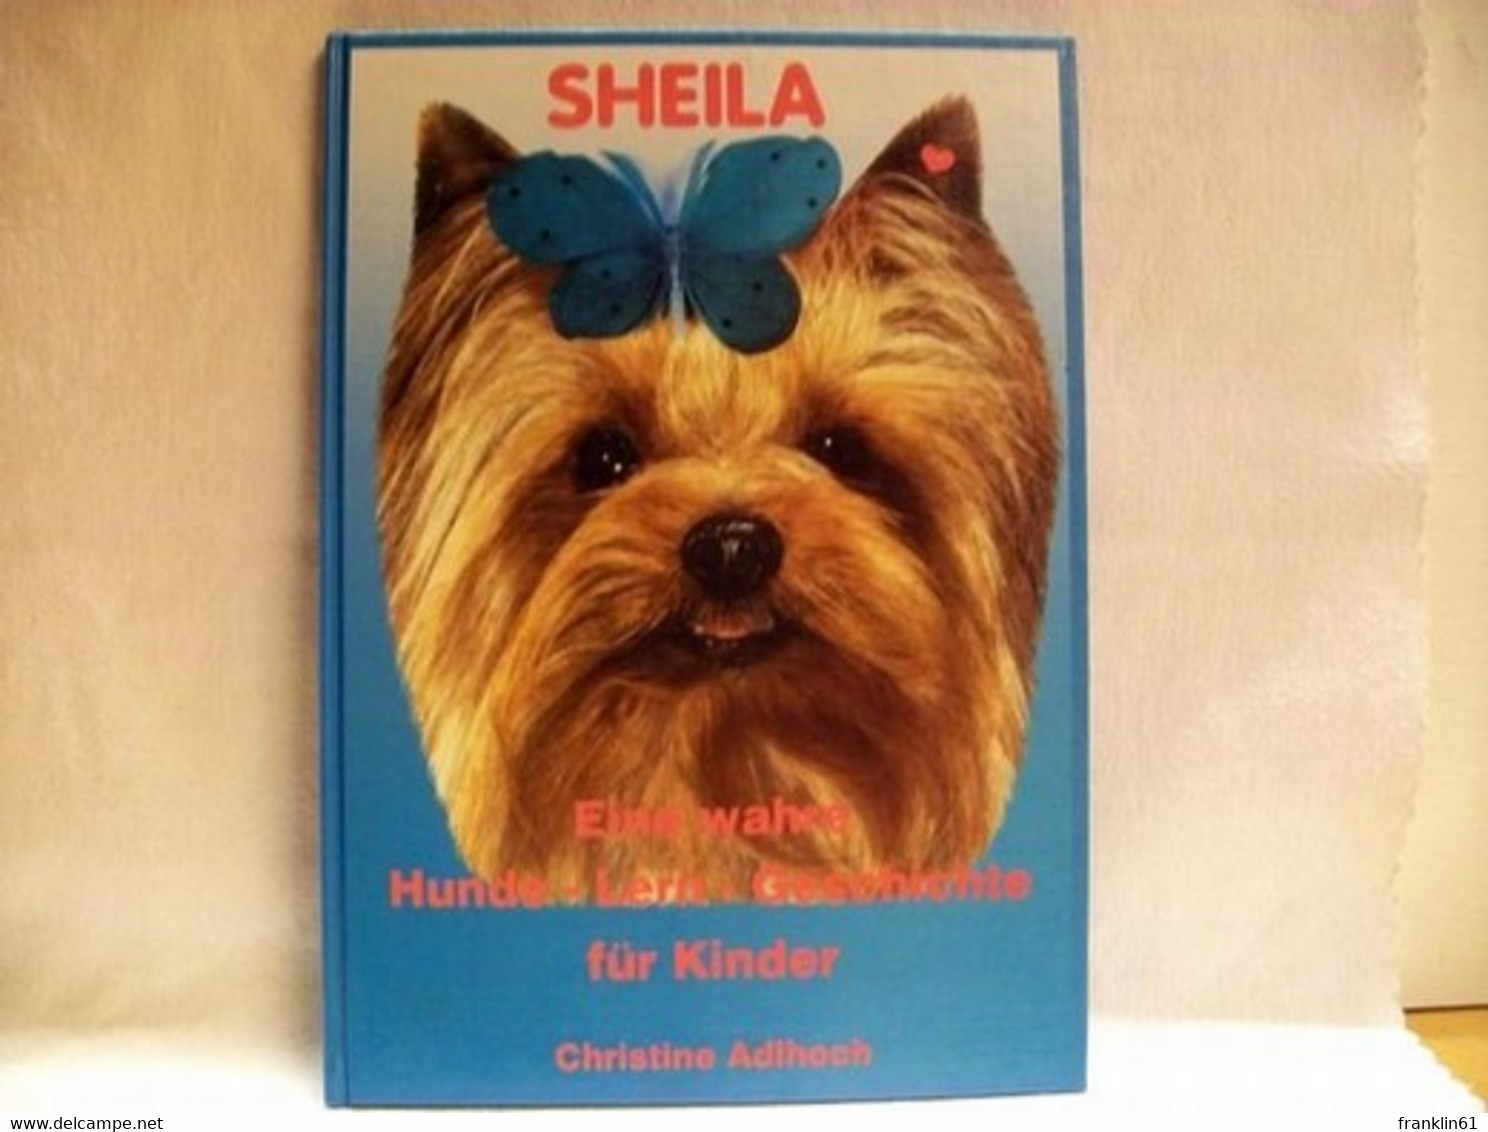 Sheila : Eine Wahre Hunde-Lern-Geschichte Für Kinder - Dieren